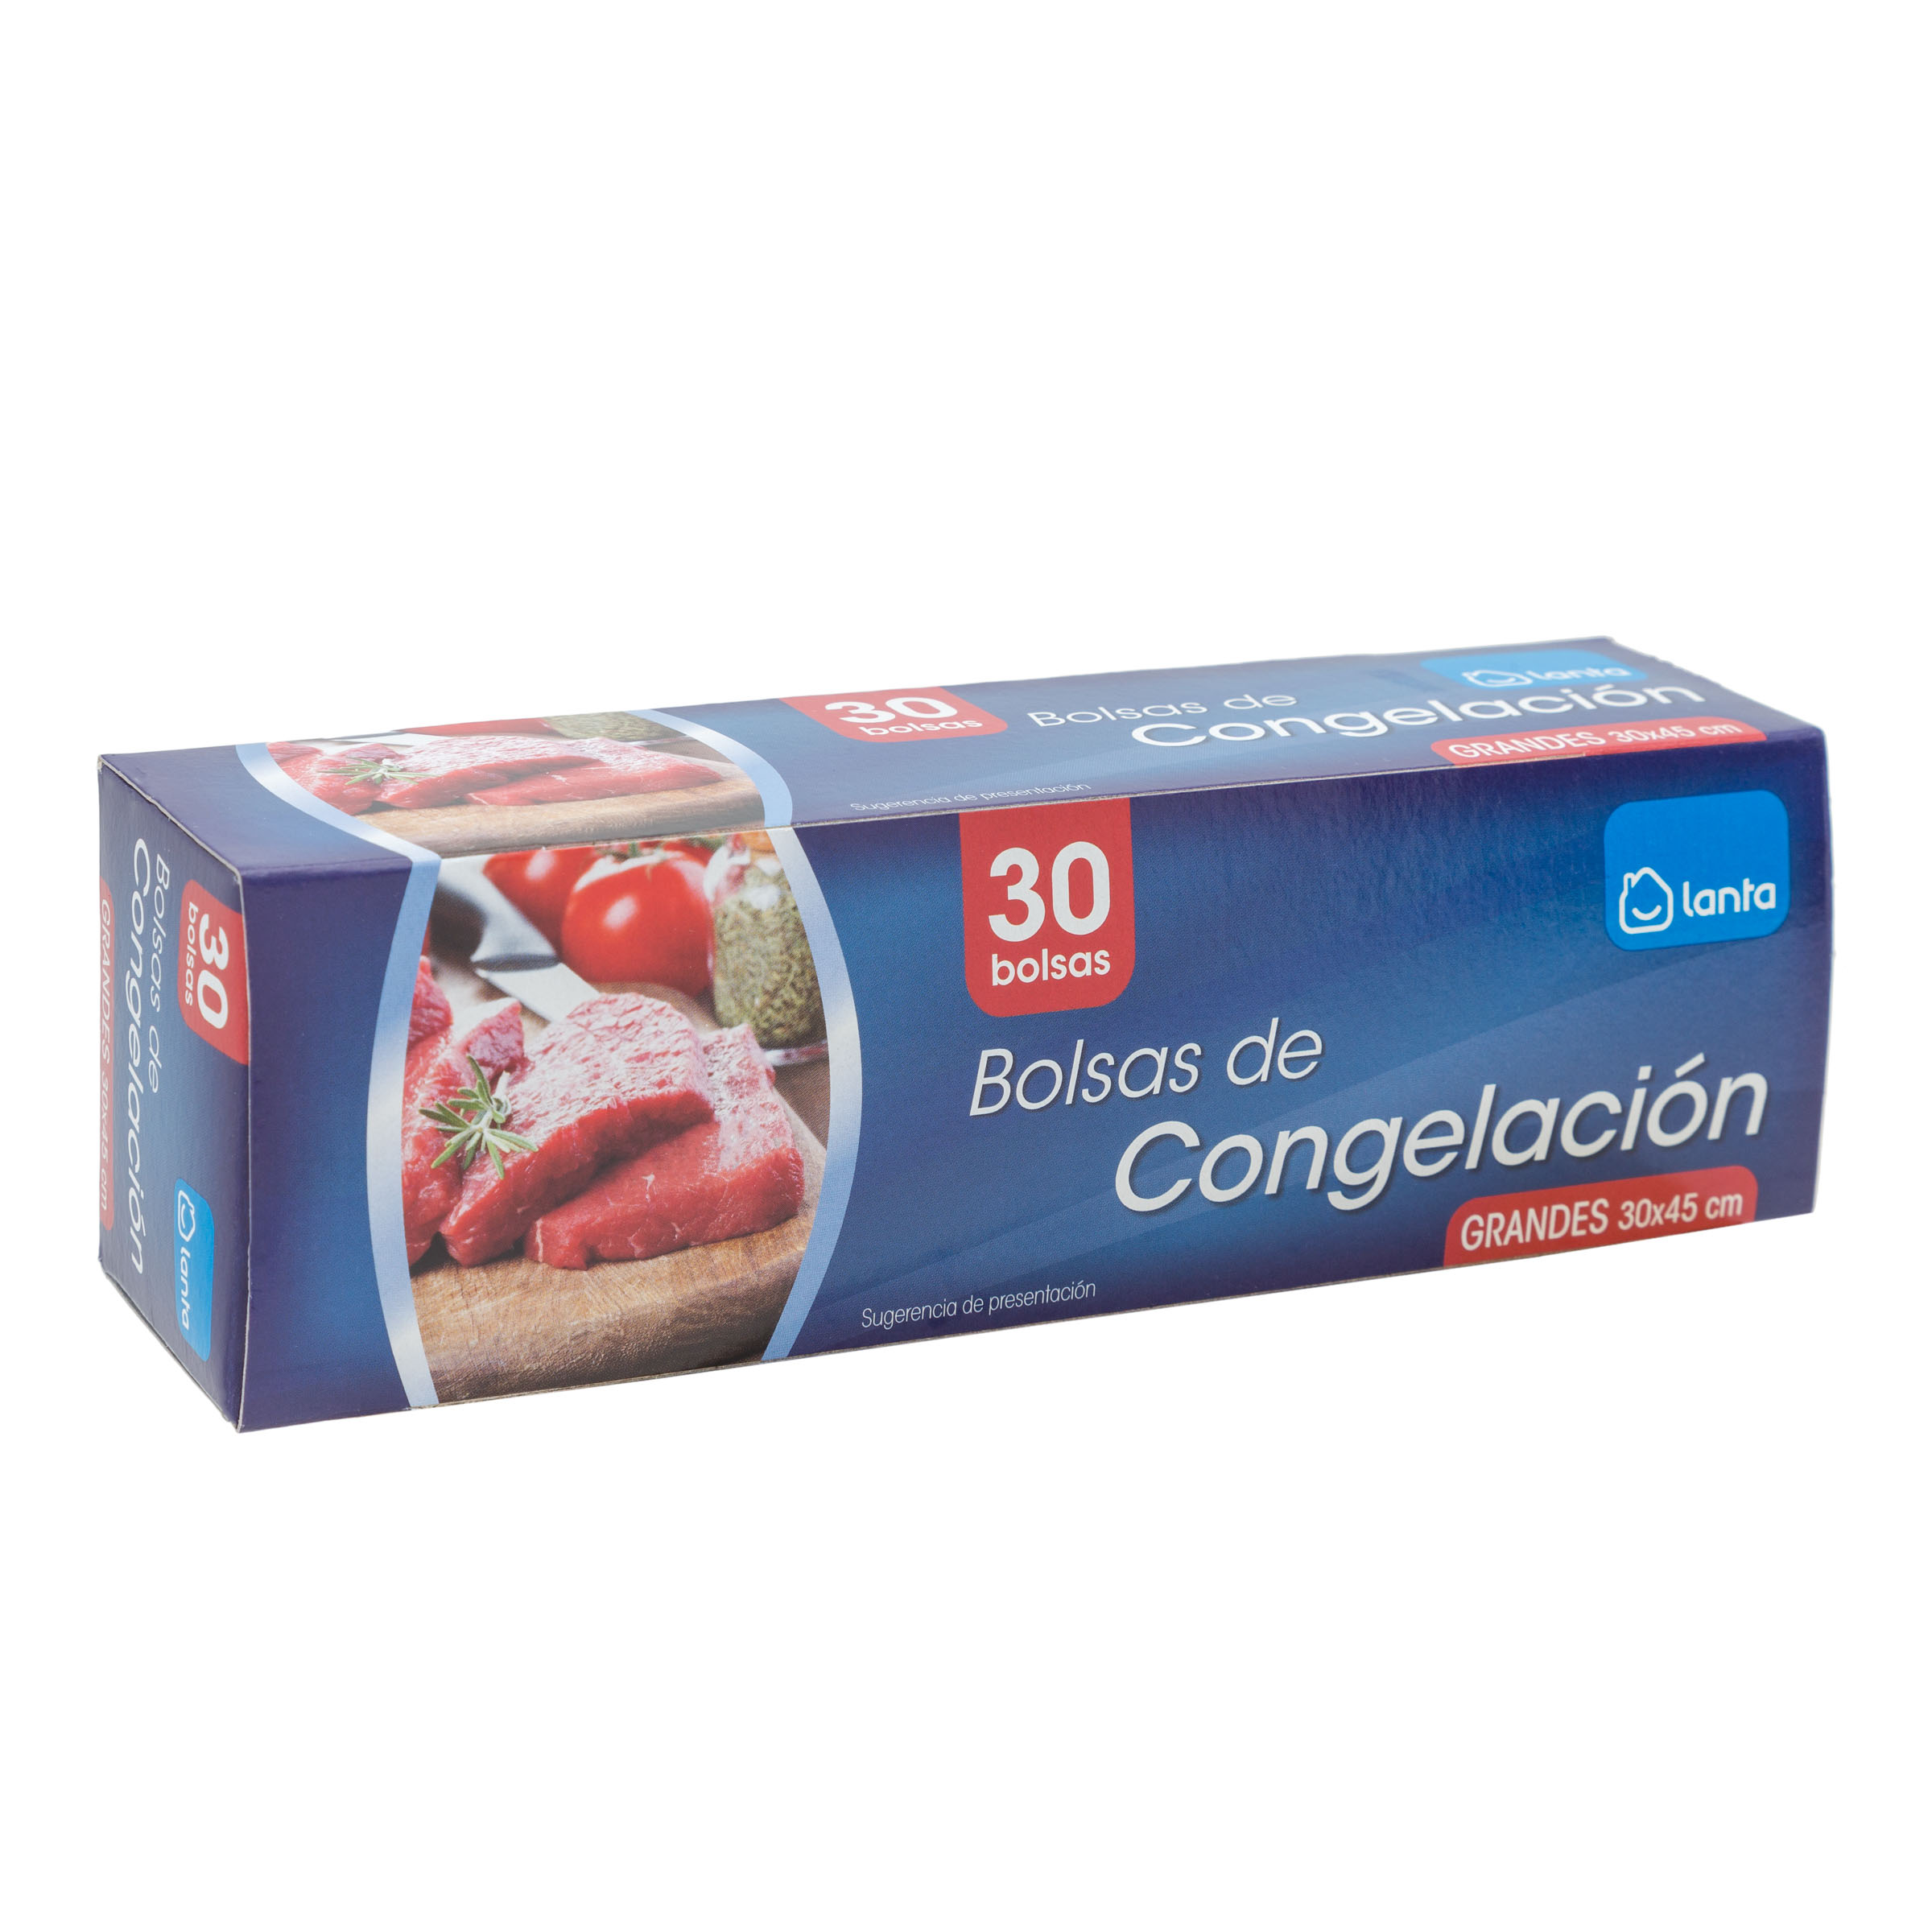 Bolsas de congelación Super Paco caja 30 unidades - Supermercados DIA